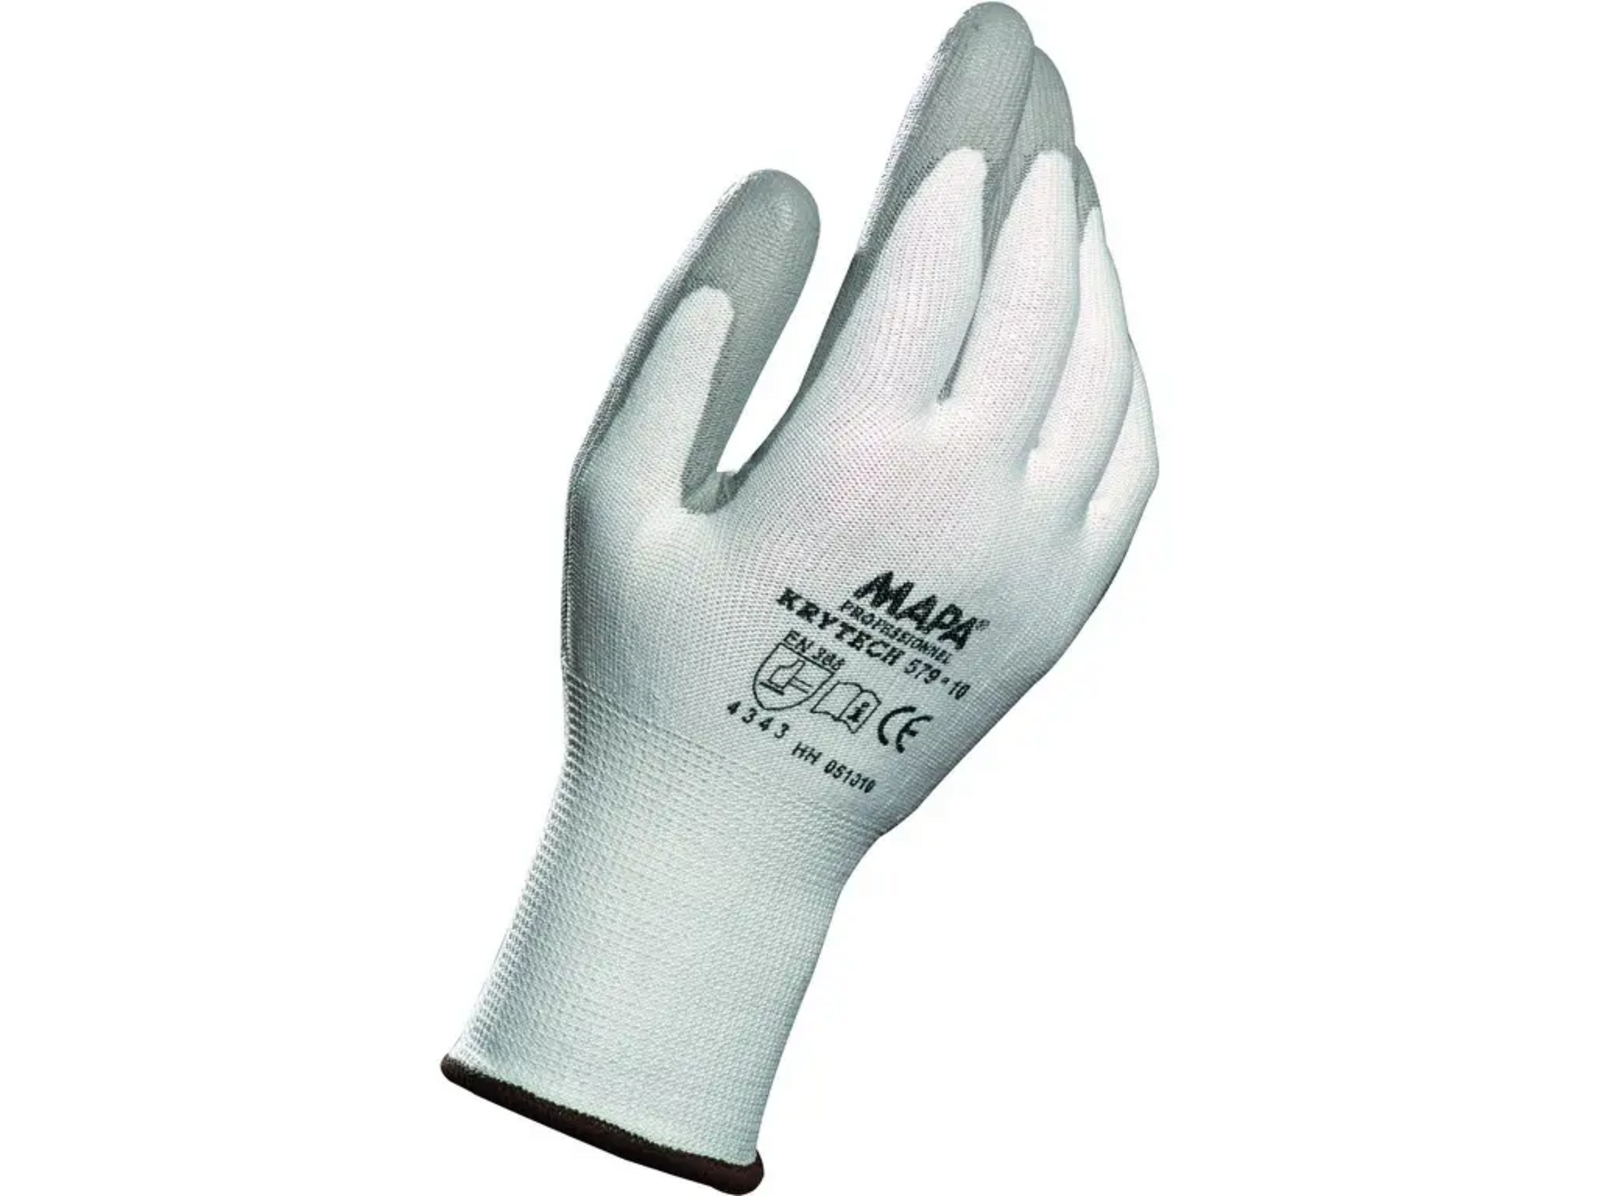 Protiporezové rukavice Mapa Krytech 579 - veľkosť: 9/L, farba: biela/sivá